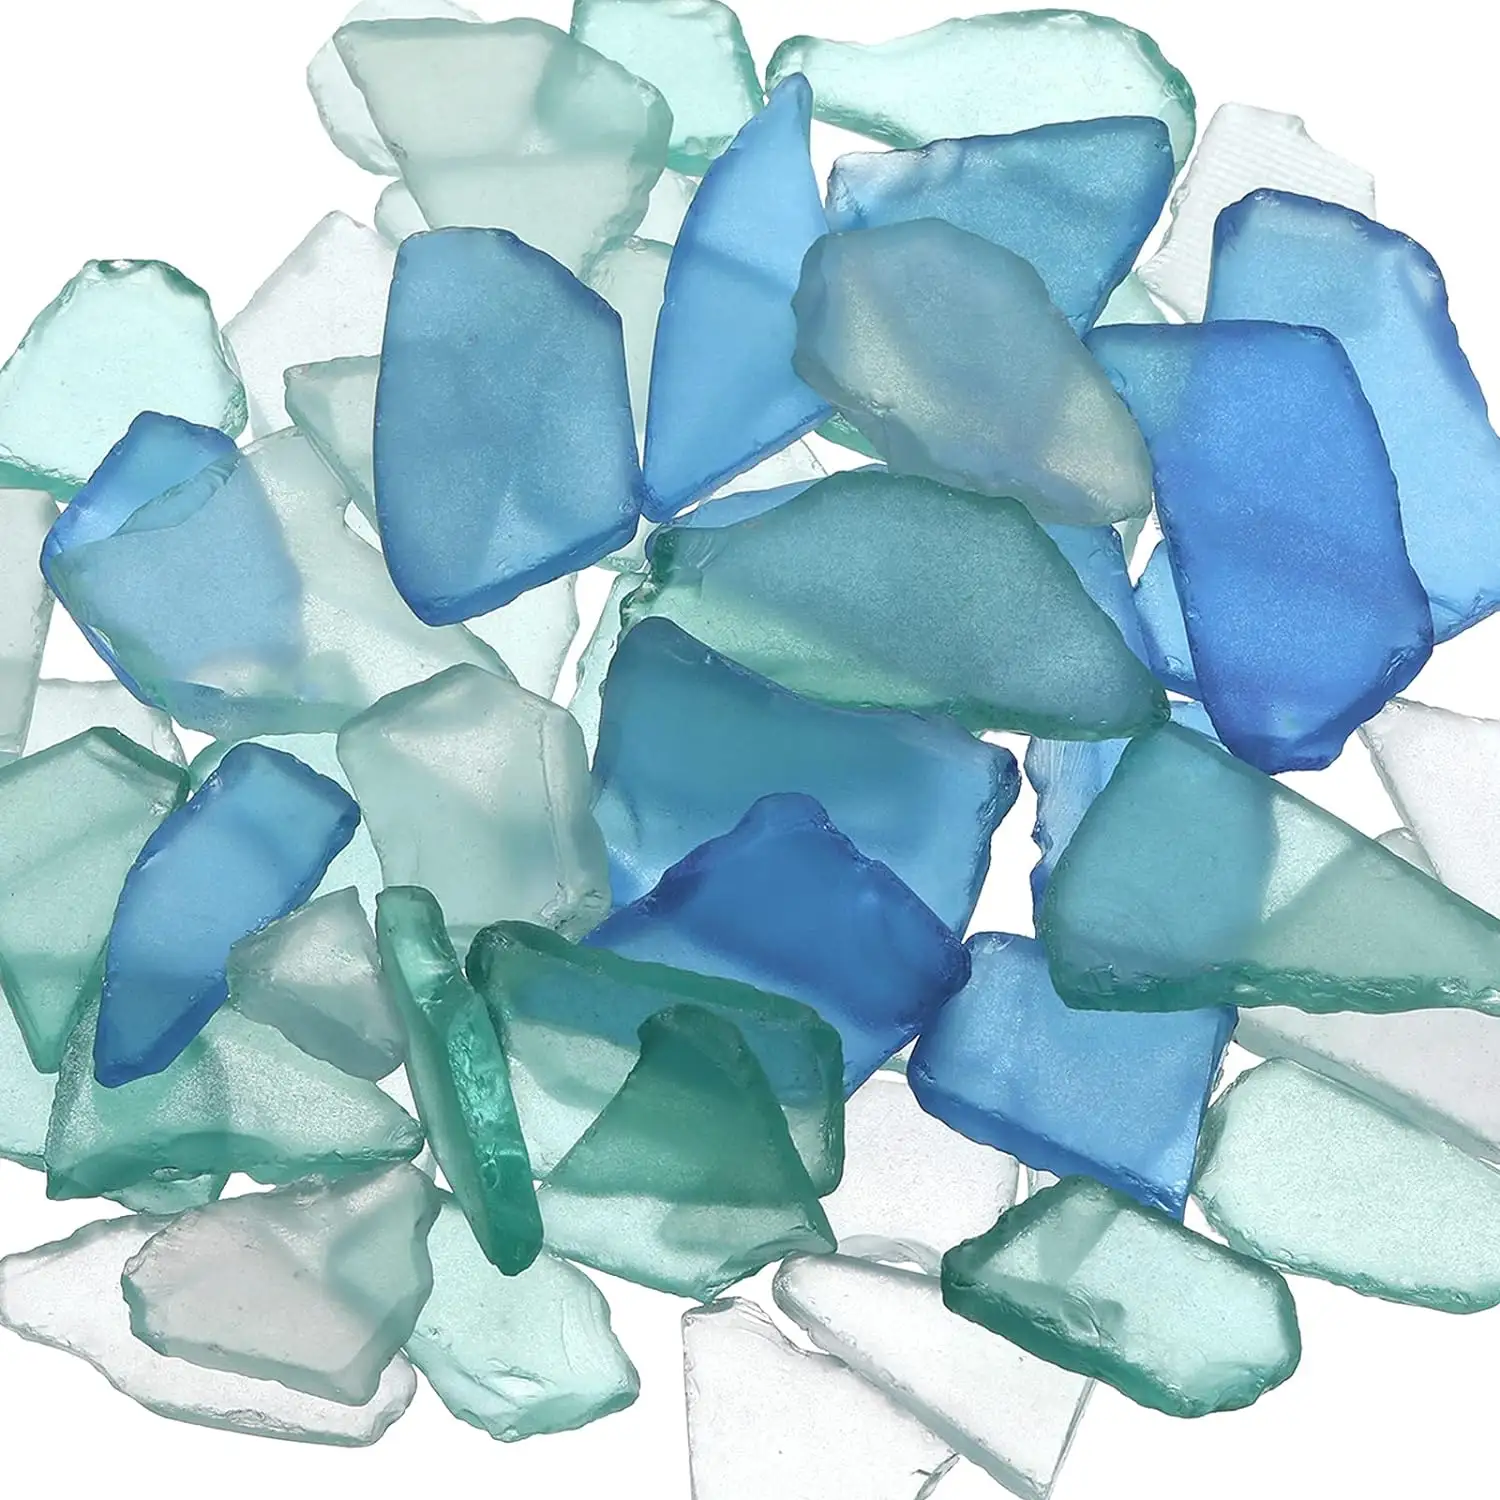 11 עוז בתפזורת חתיכות זכוכית ים כתושות לאומנות חתונות קישוטי עיצוב הבית זכוכית שטוחה חלבית צבעונית ב כחול לבן ירוק